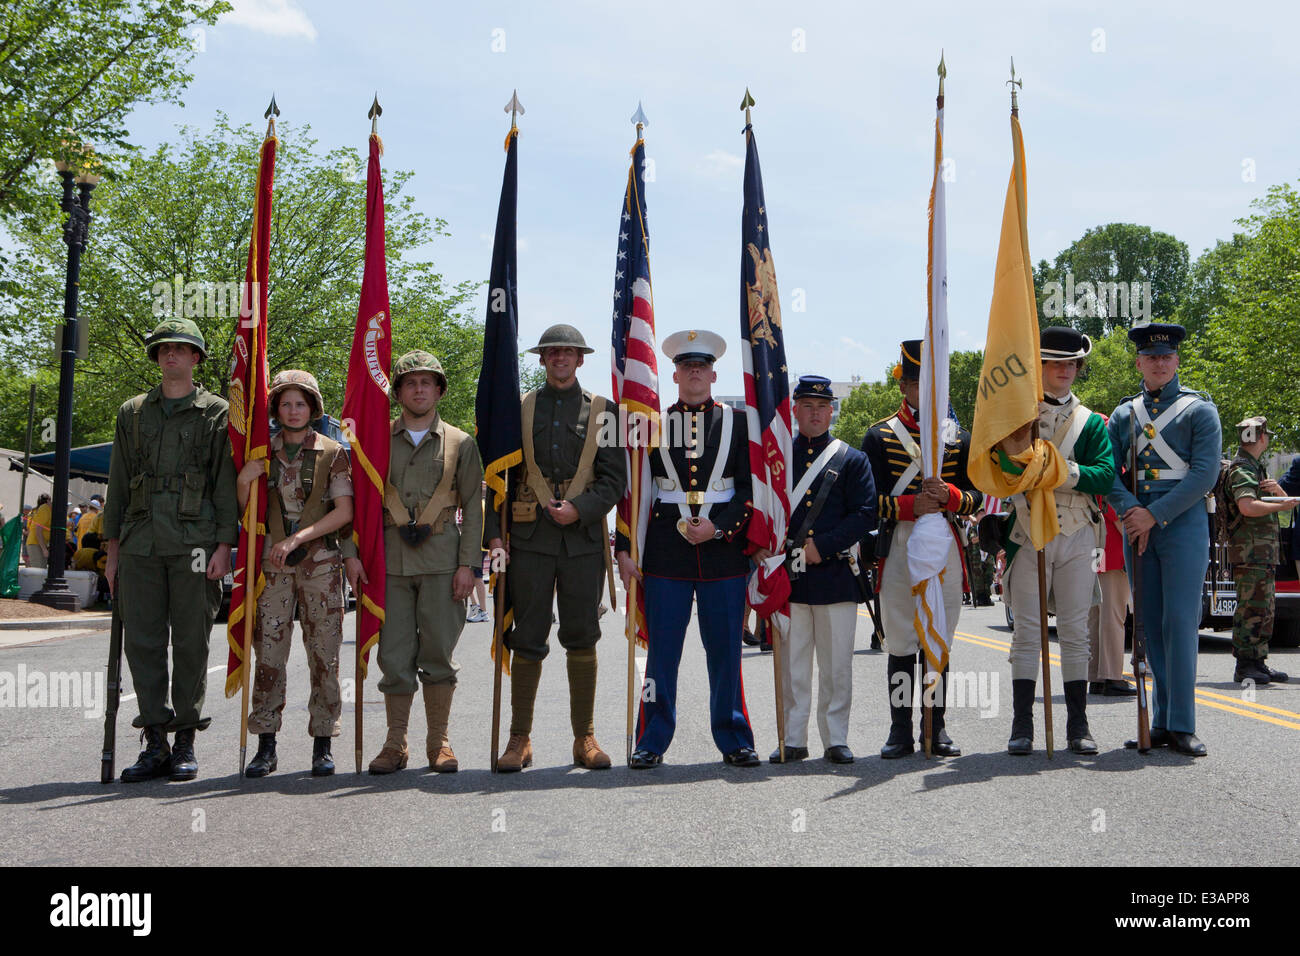 Noi Militare Guardia di colore in questo periodo per correggere le divise da grandi wartimes nella storia - 2014 Memorial Day parade, Washington DC, Stati Uniti d'America Foto Stock